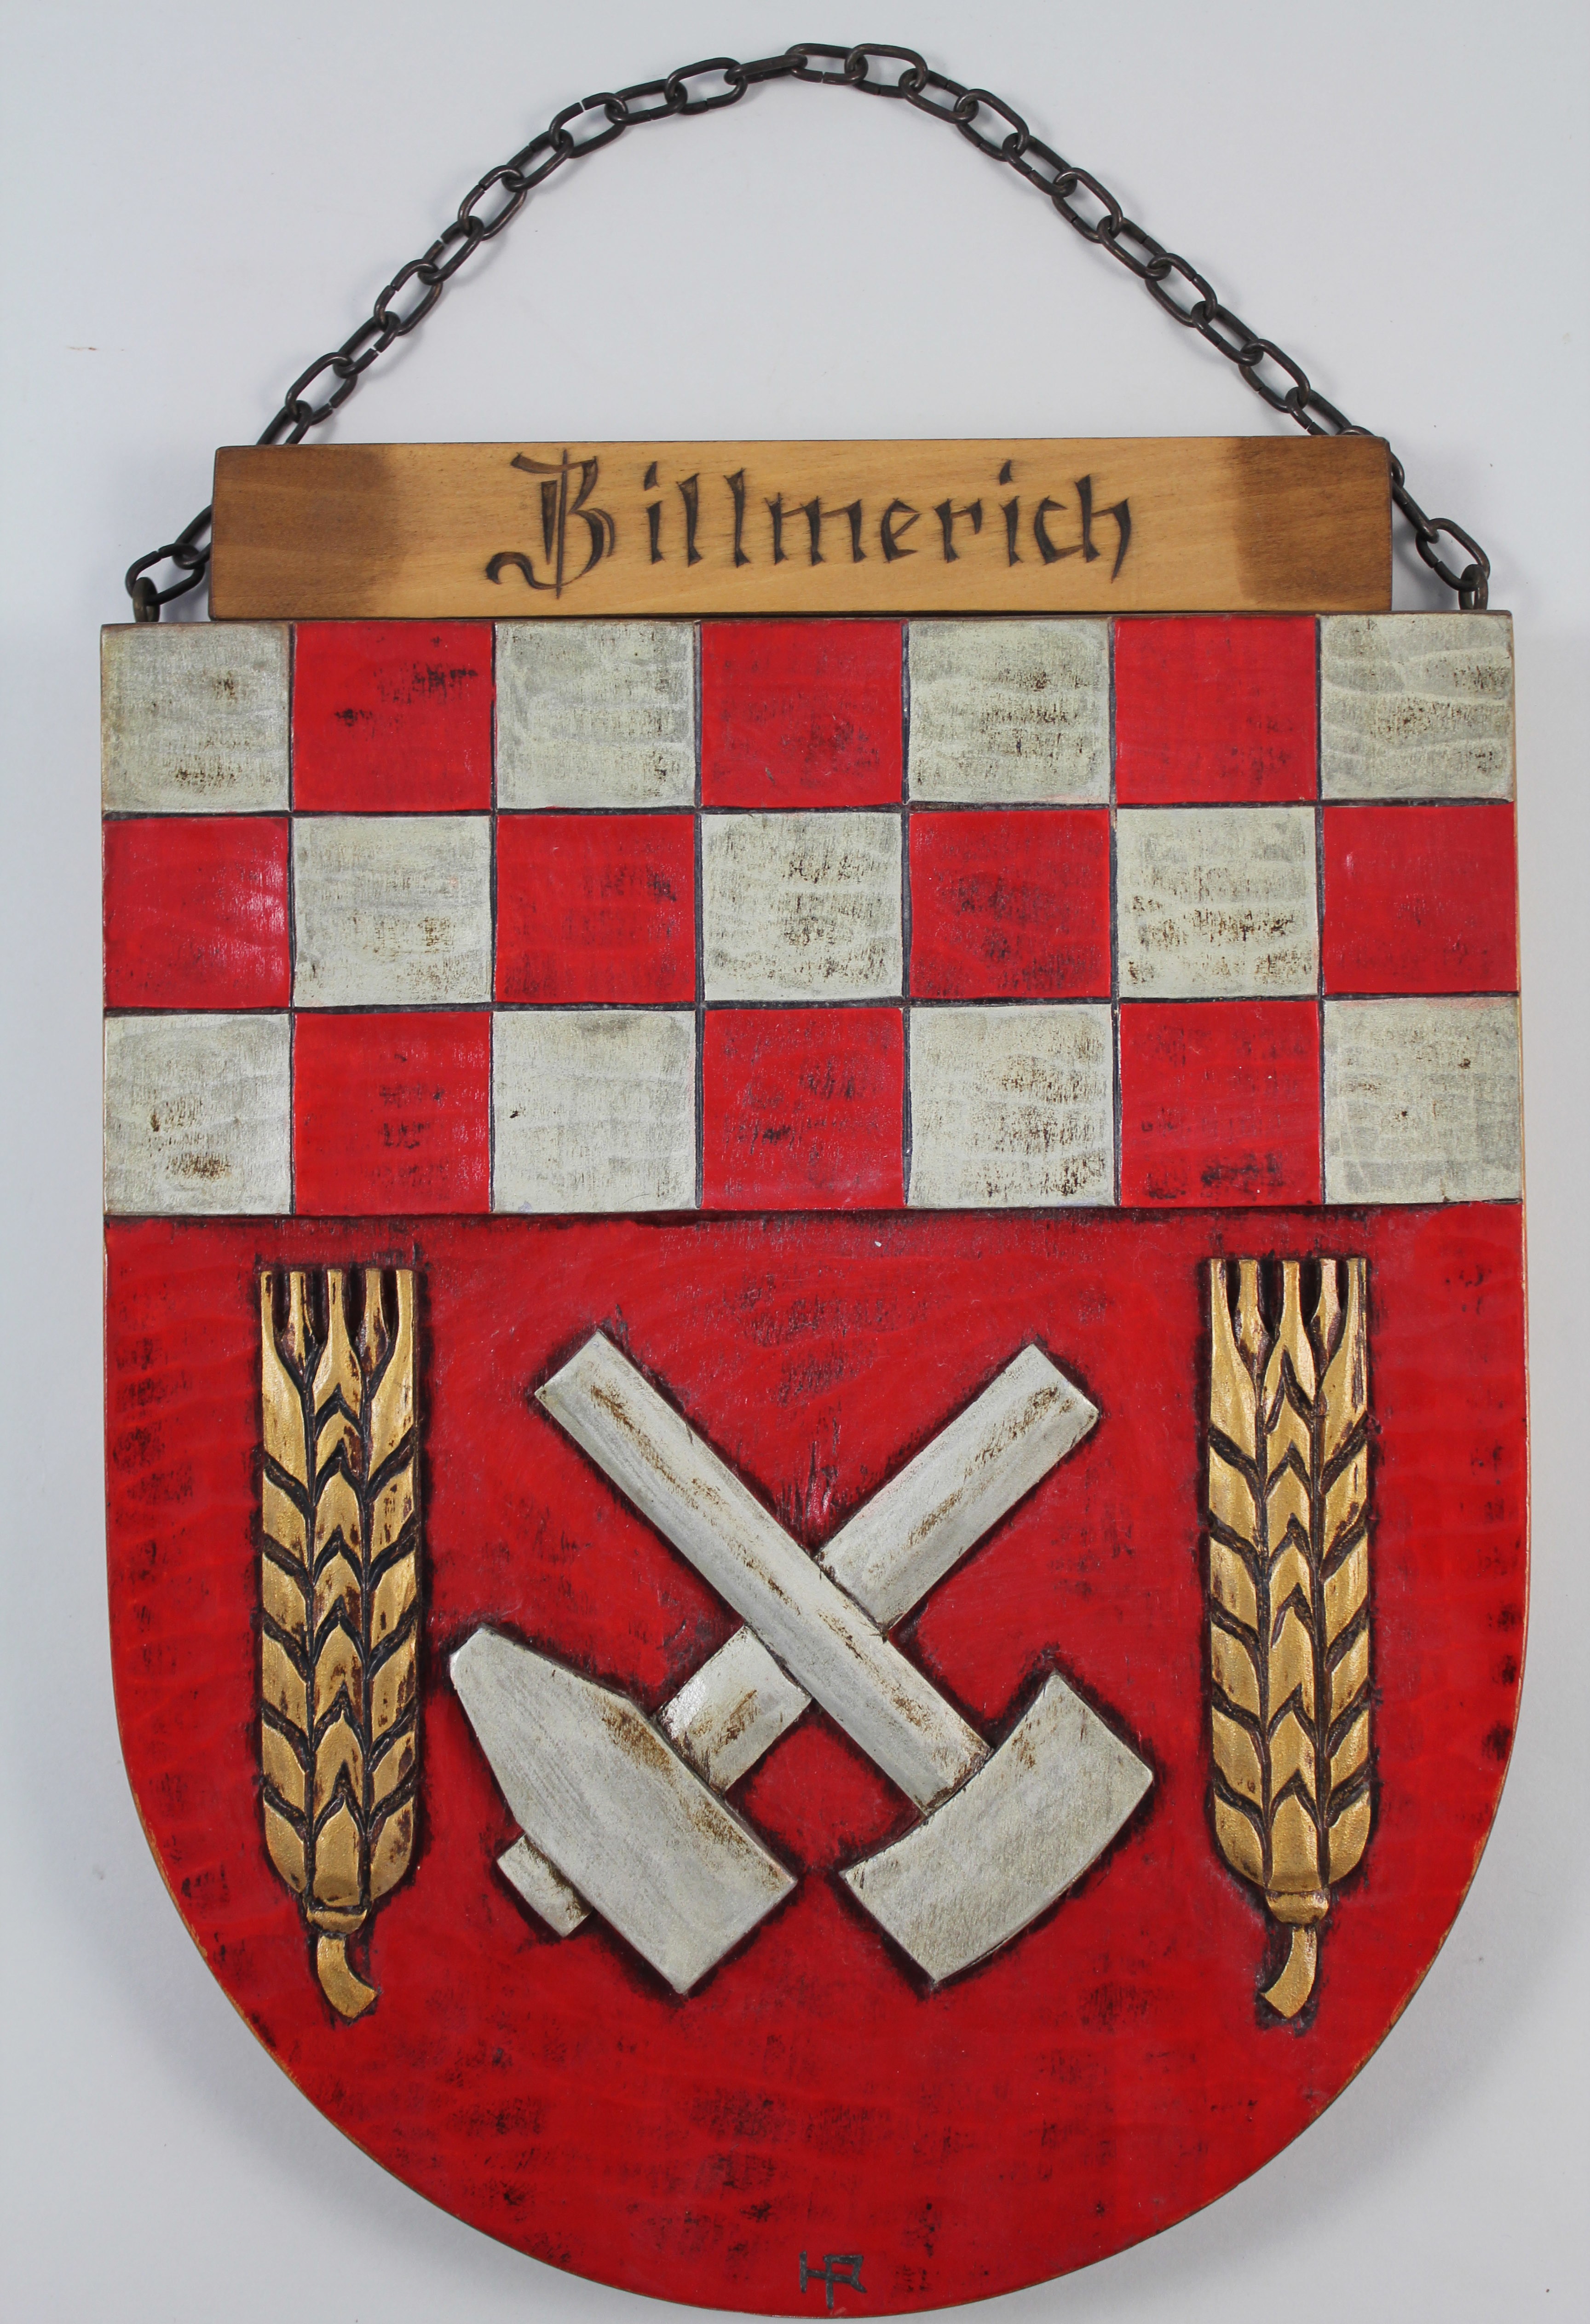 Wappenschild & Hölzernes Wappen von Billmerich (Hellweg-Museum Unna CC BY-NC-SA)